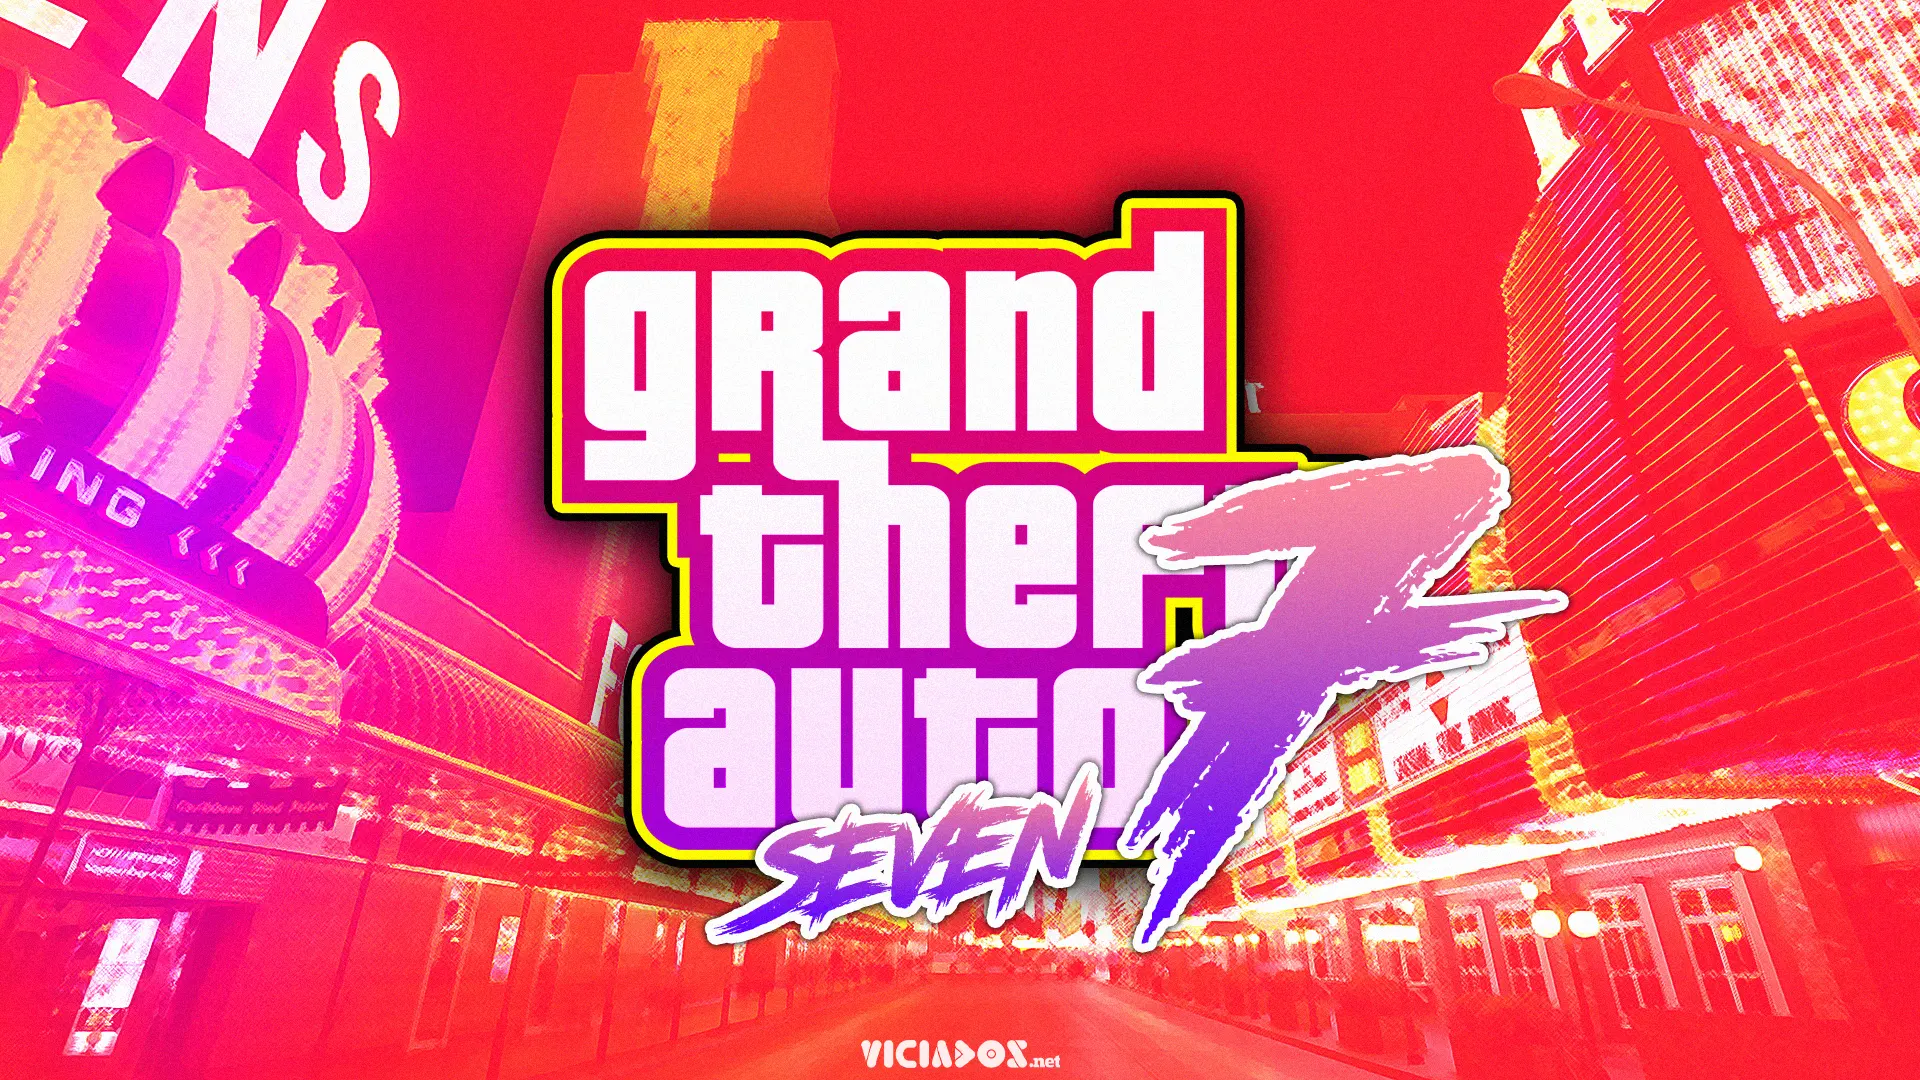 Quando Grand Theft Auto VII (GTA 7) será lançado? Entenda! 2023 Viciados